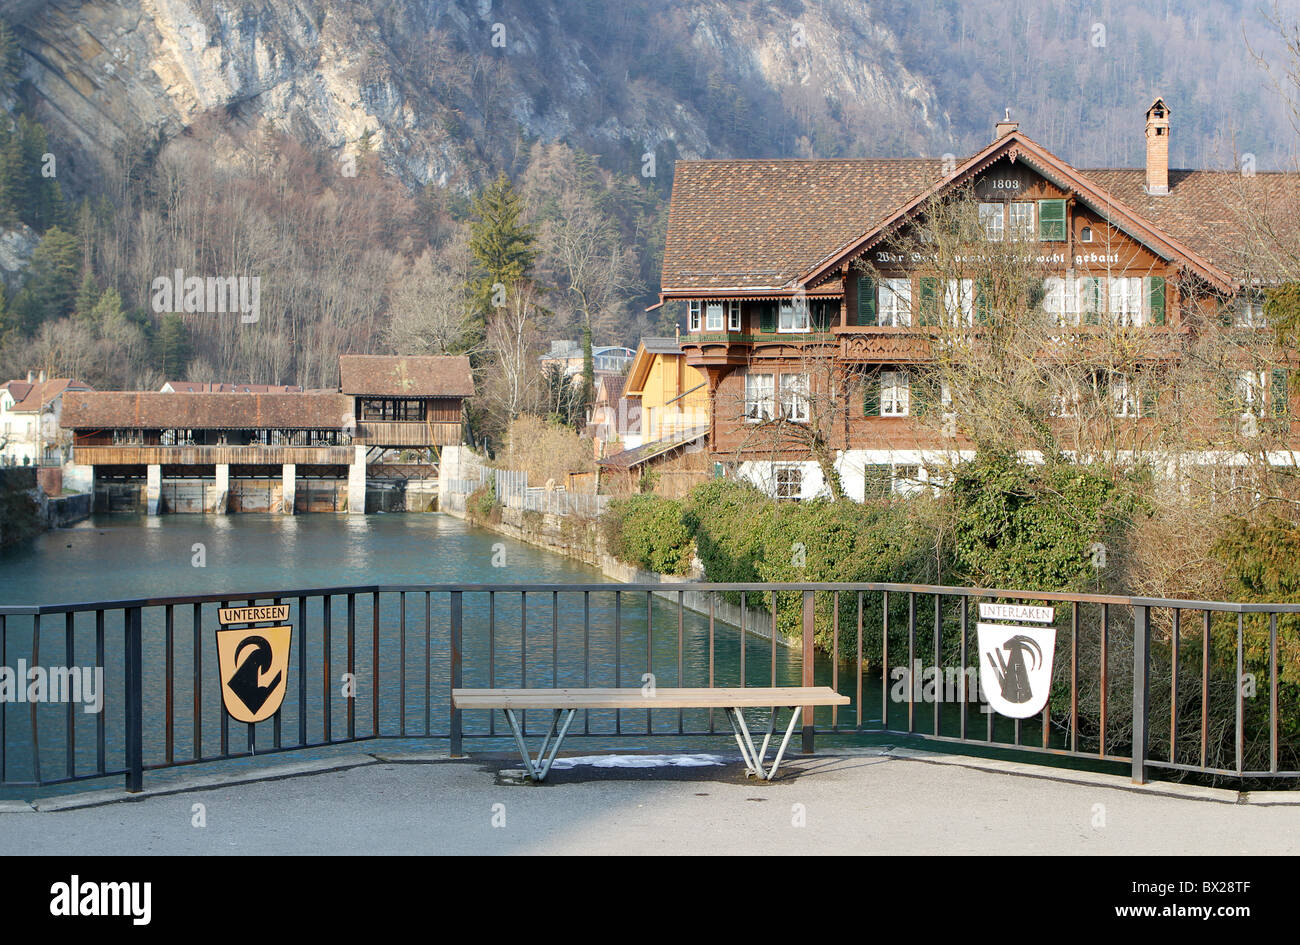 Bridge over the Aare River between the two towns of Interlaken and Unterseen, Switzerland. Stock Photo